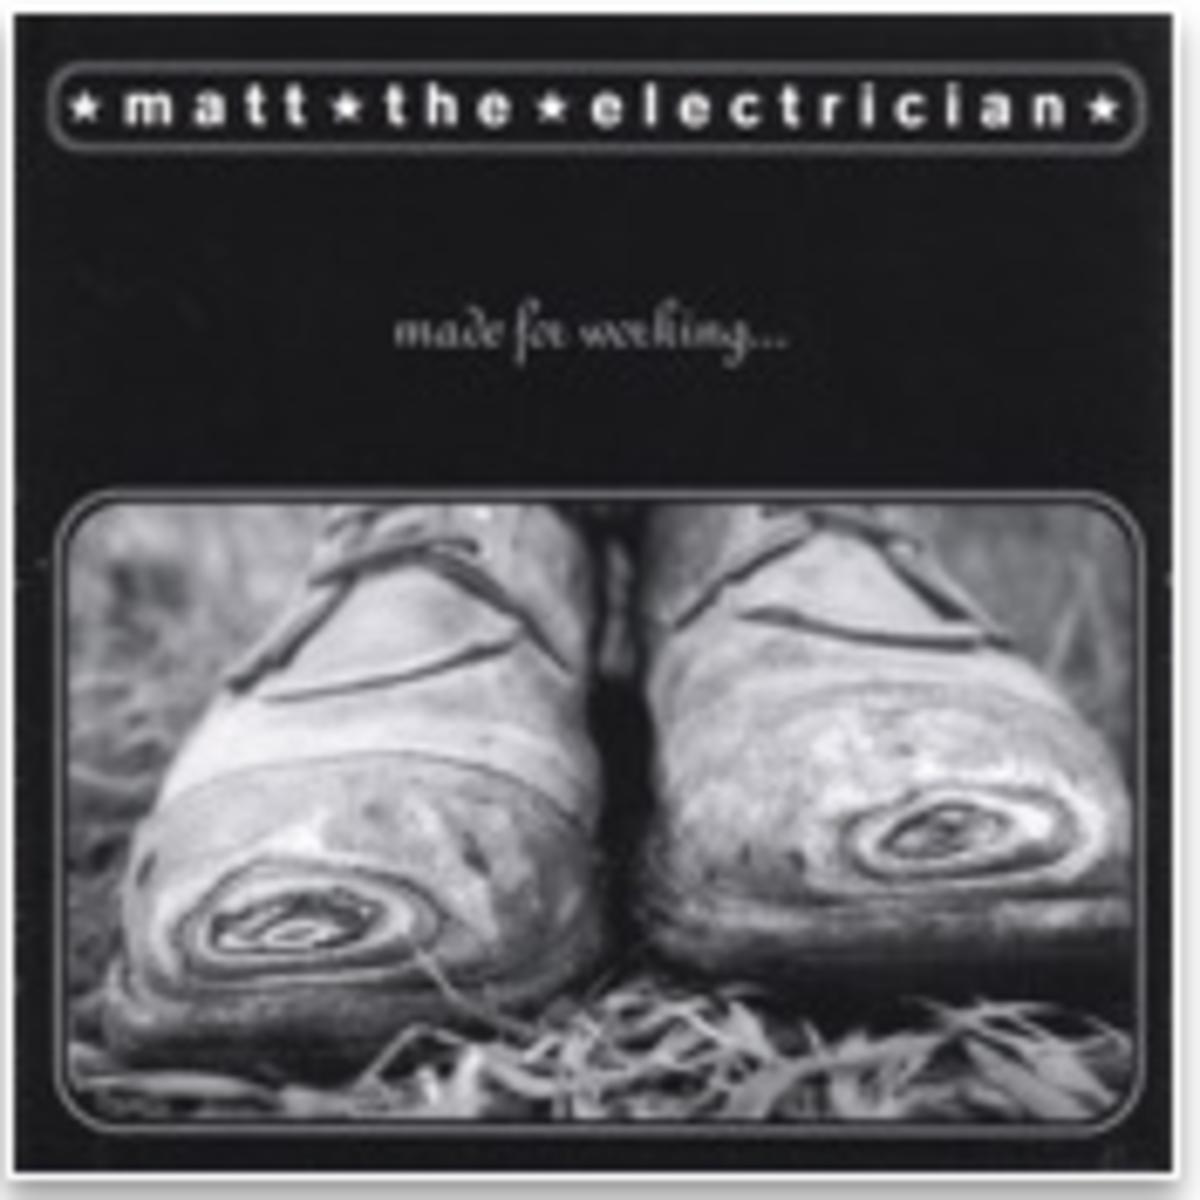 Matt the Electrician